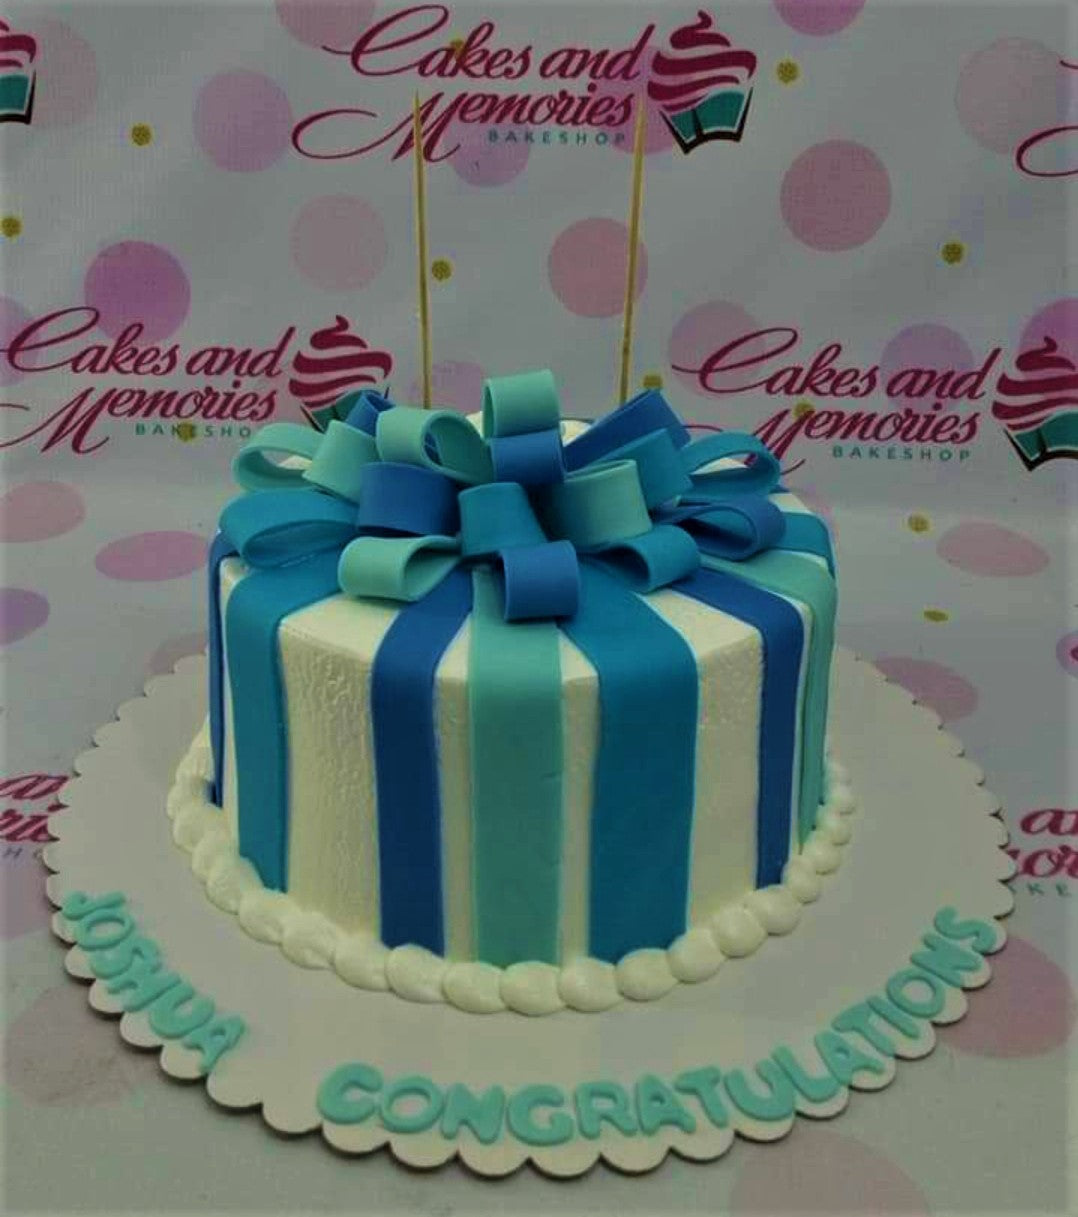 6 Luxury - LV Ribbon Birthday Cake ( Buttercream) For Her Penang